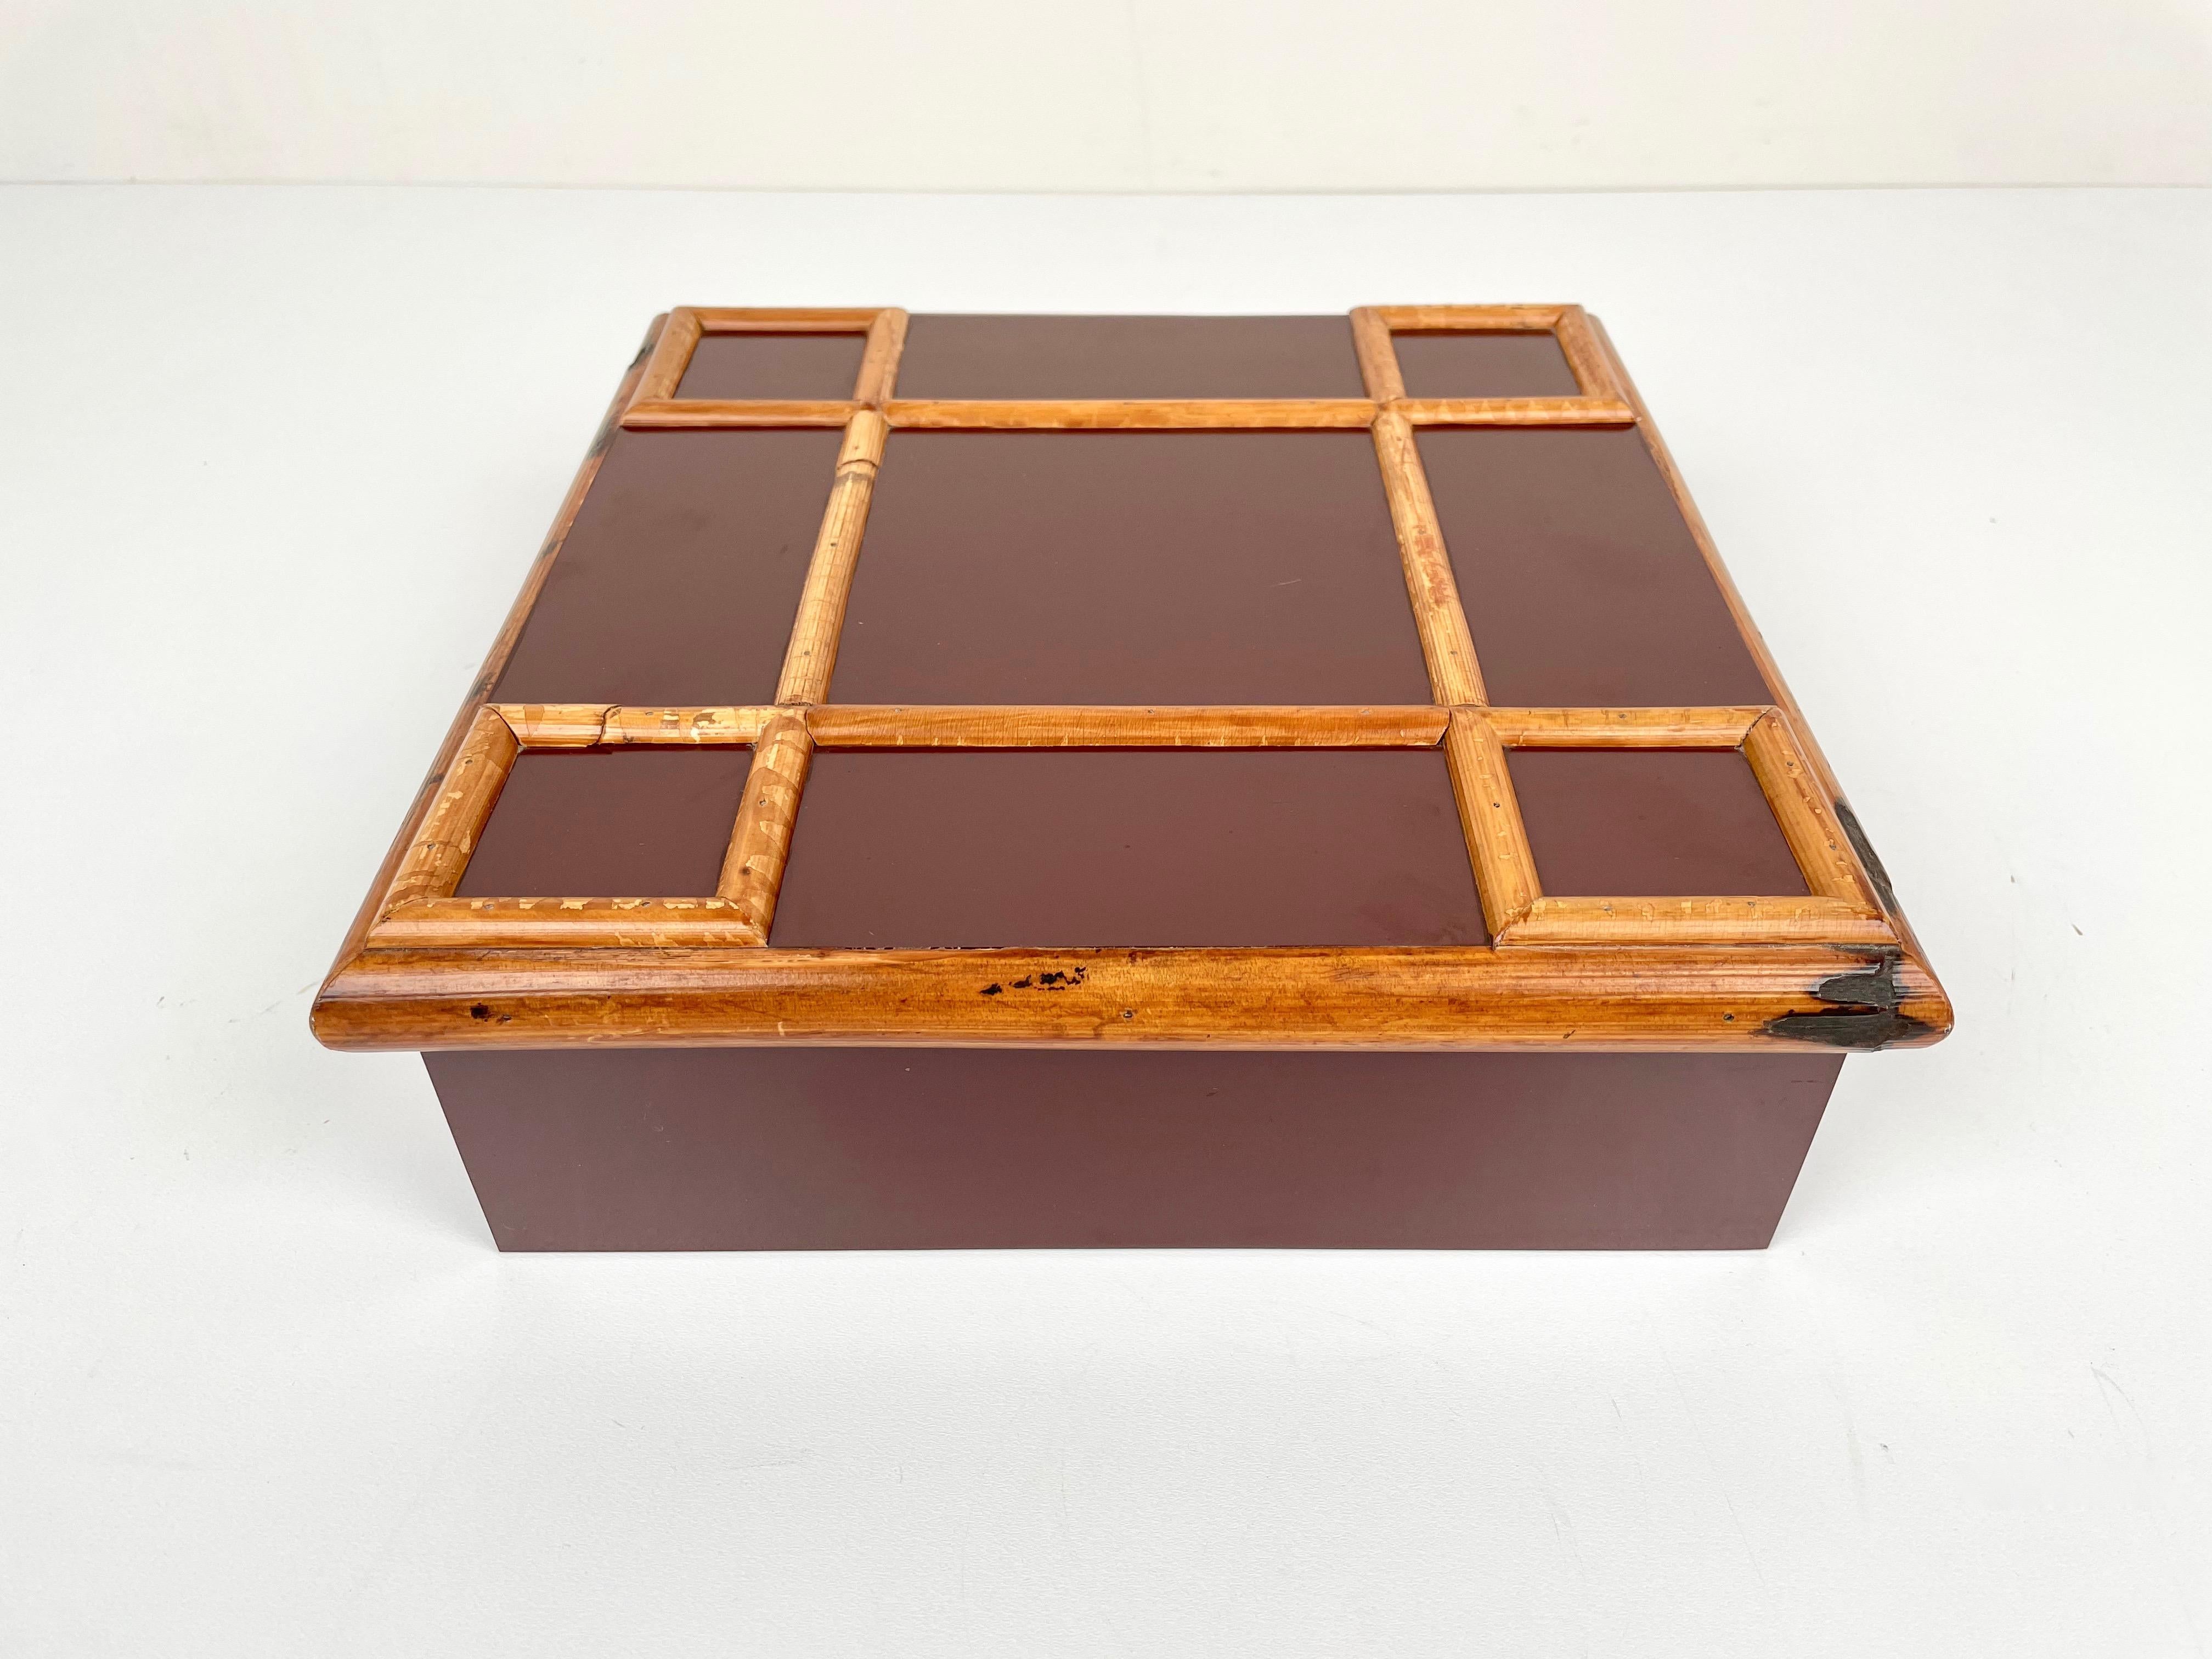 viereckige burgunderfarbene Schachtel aus Bambus und Holz aus den 1960er Jahren von dem italienischen Designer Tommaso Barbi. 
Das Originaletikett ist noch auf der Unterseite angebracht, wie auf den Fotos zu sehen ist.